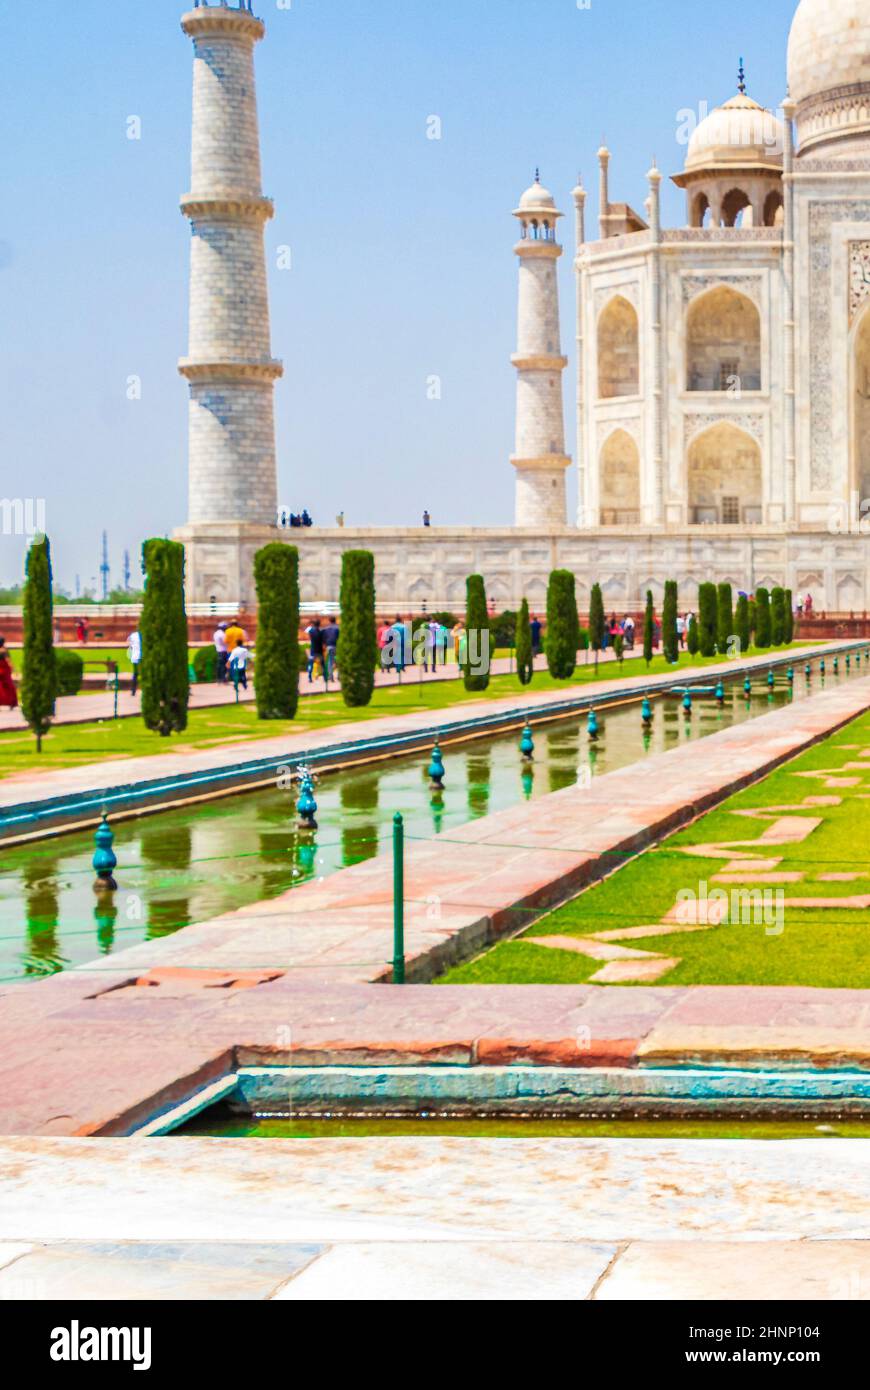 Panorama du Taj Mahal à Agra Inde avec des jardins symétriques étonnants. Banque D'Images